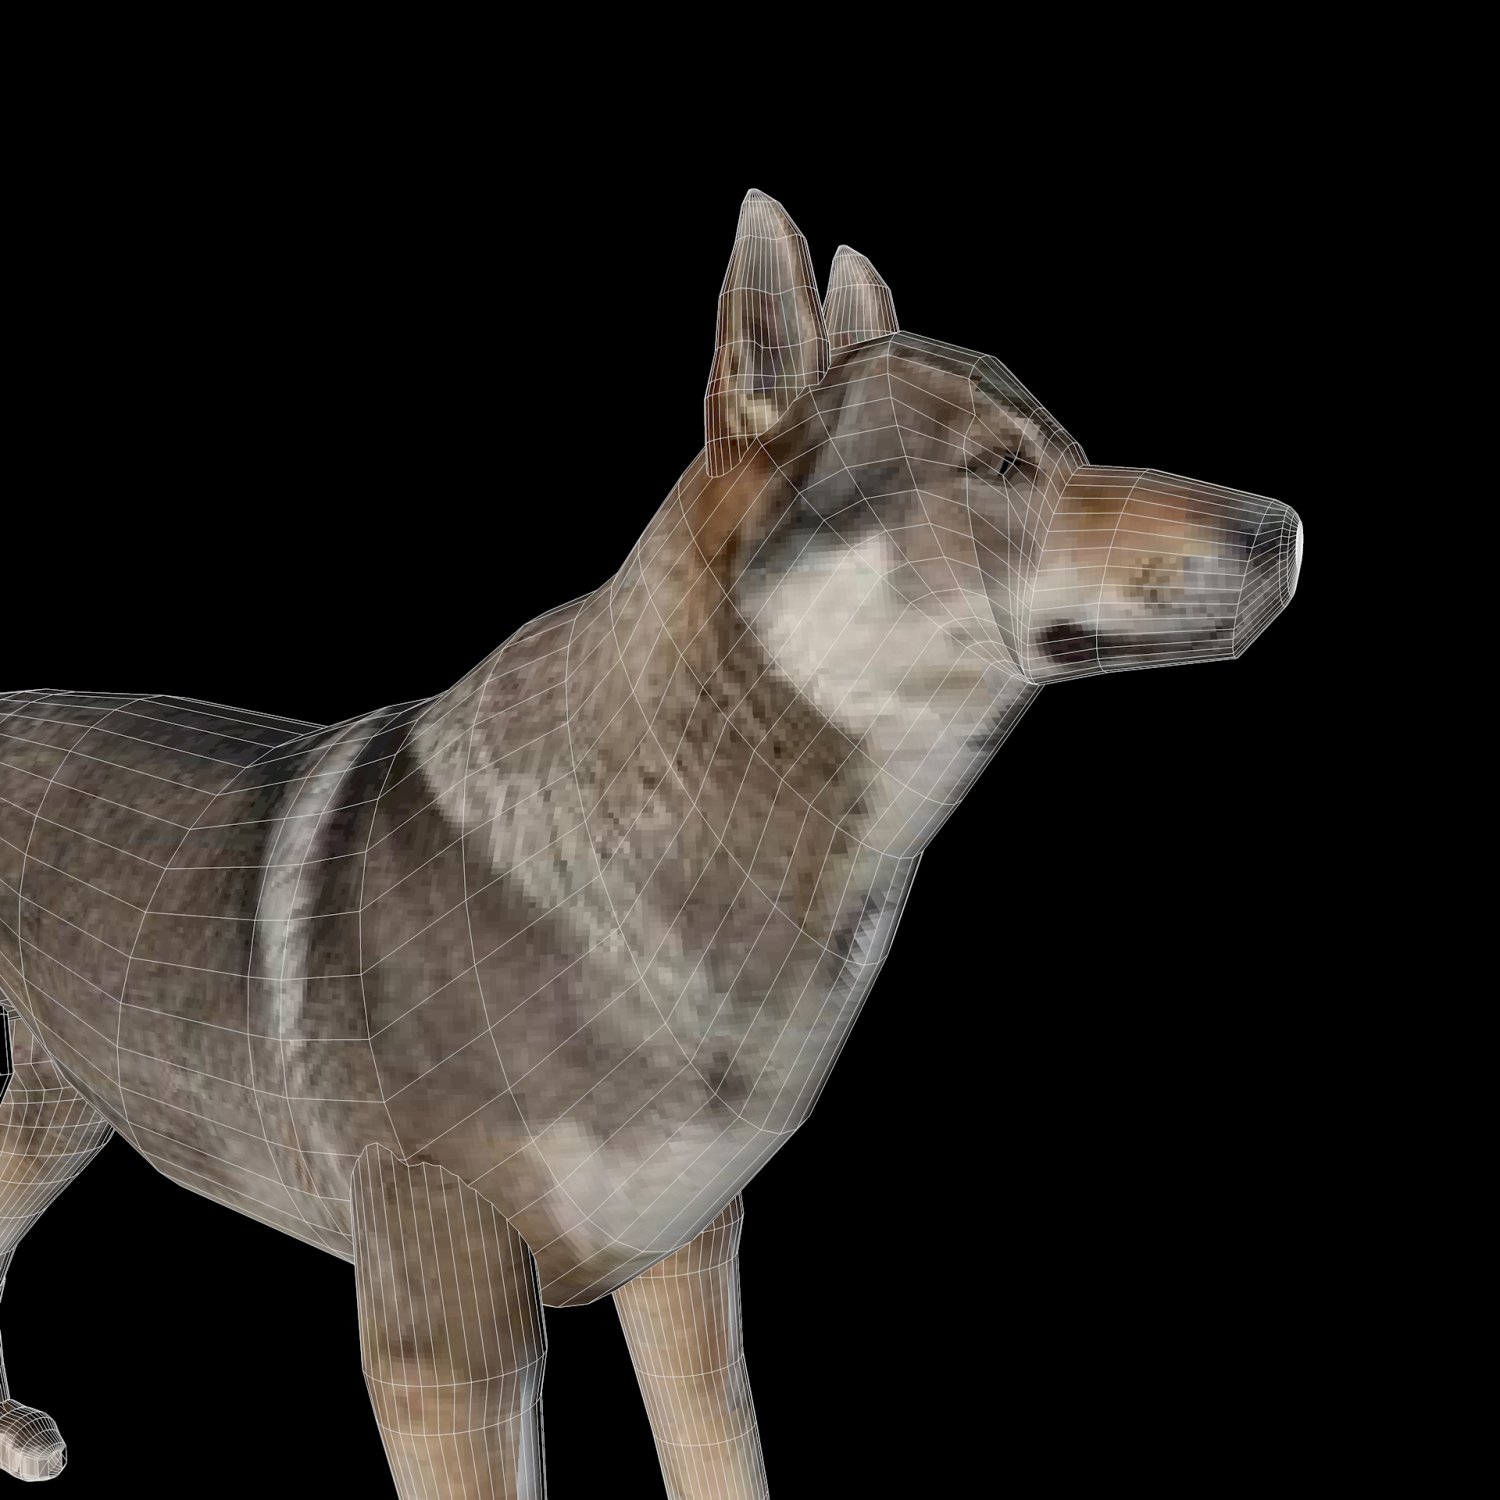 Wolf models. Модель волка. Волк Евразии. Wolf 3d model. Волк 3д модель с освещением.